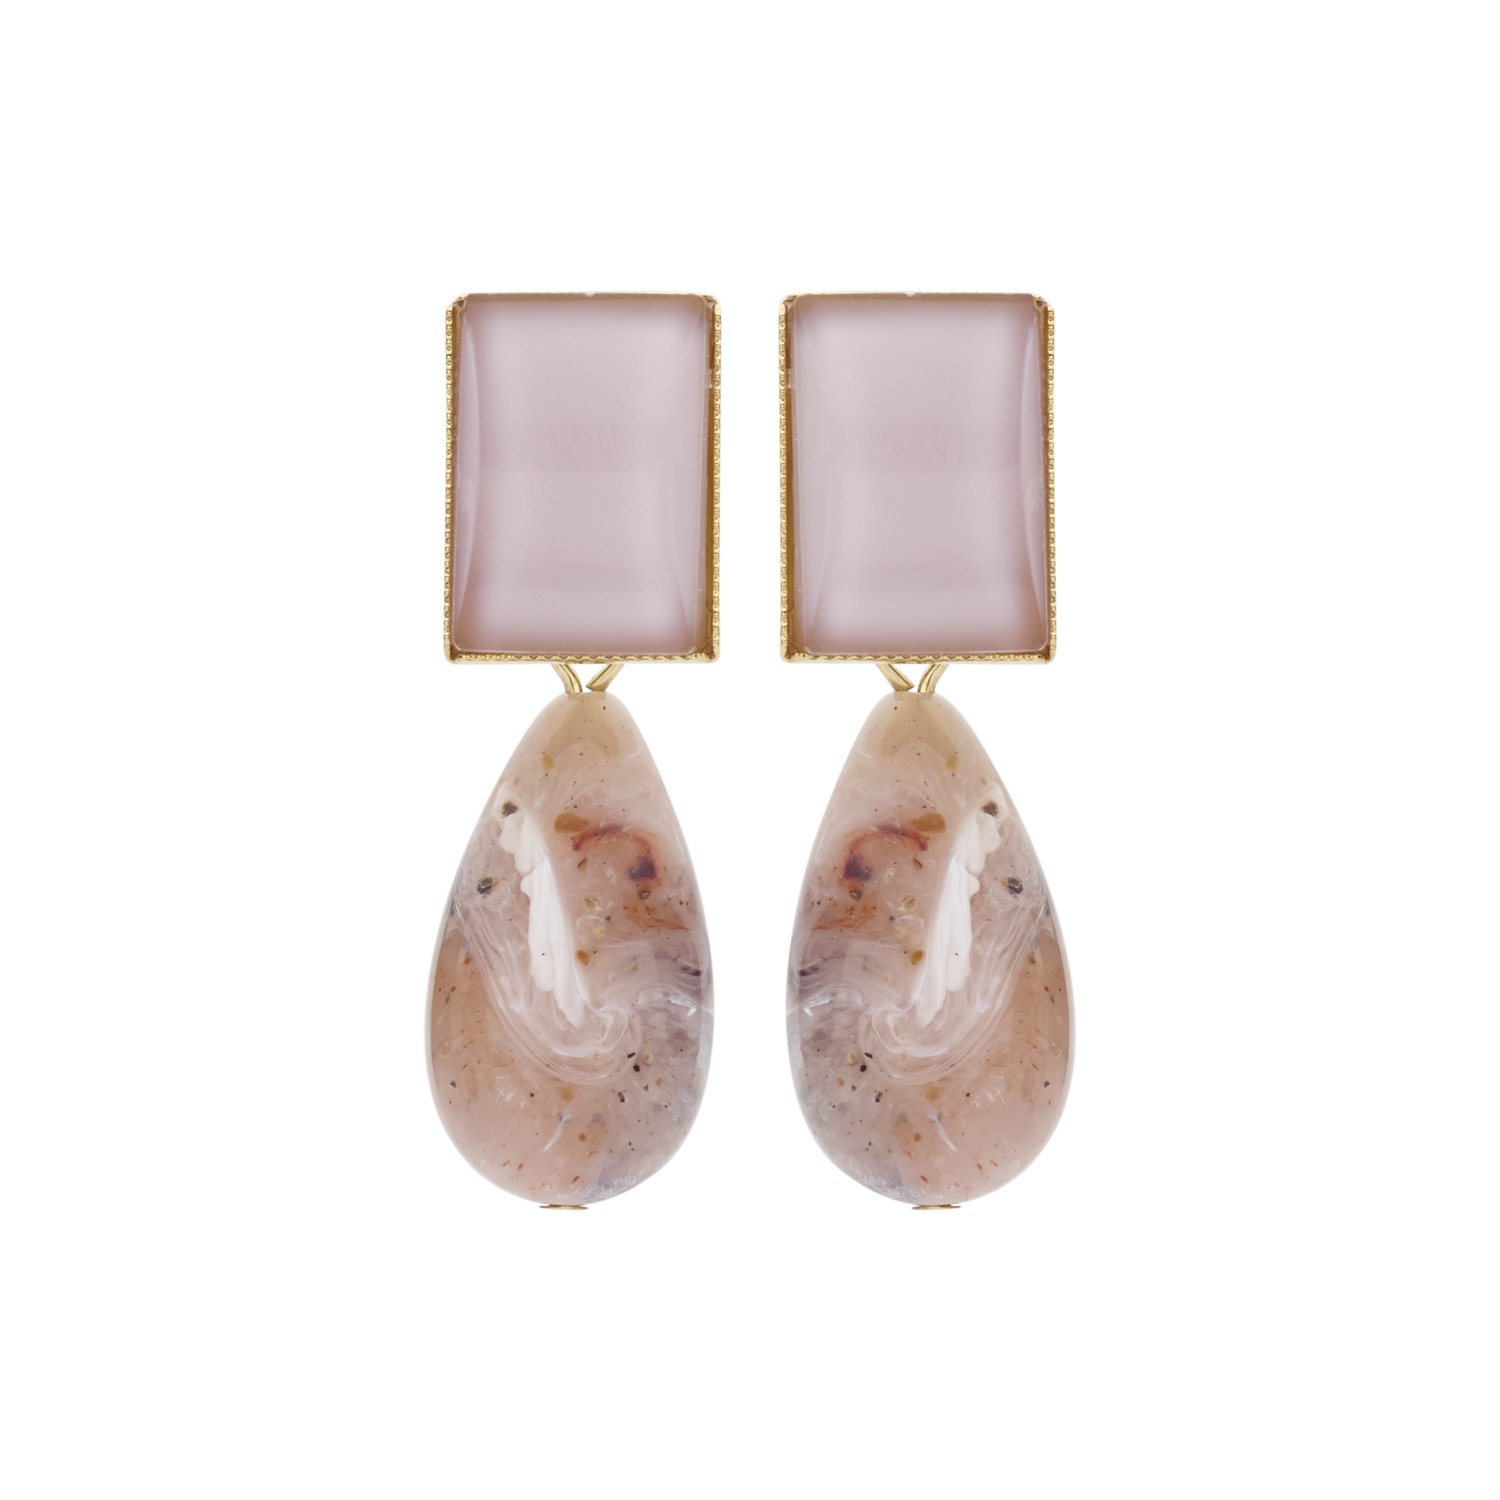 New Playa nude earrings - Souvenirs de Pomme